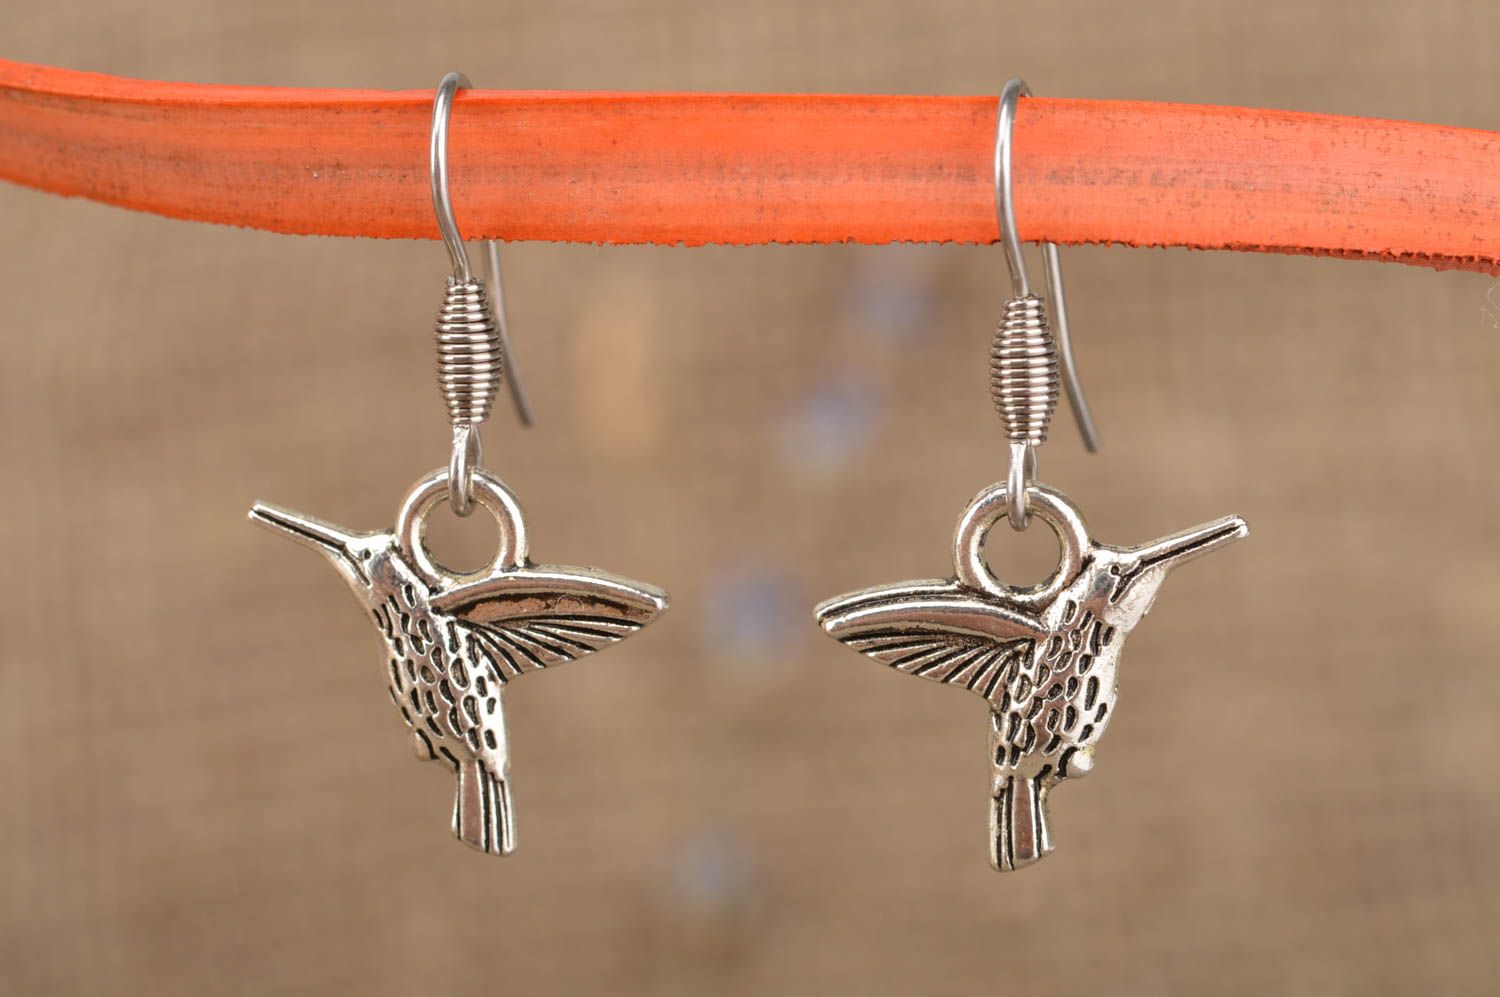 Handmade earrings metal jewelry dangling earrings women accessories gift ideas photo 1